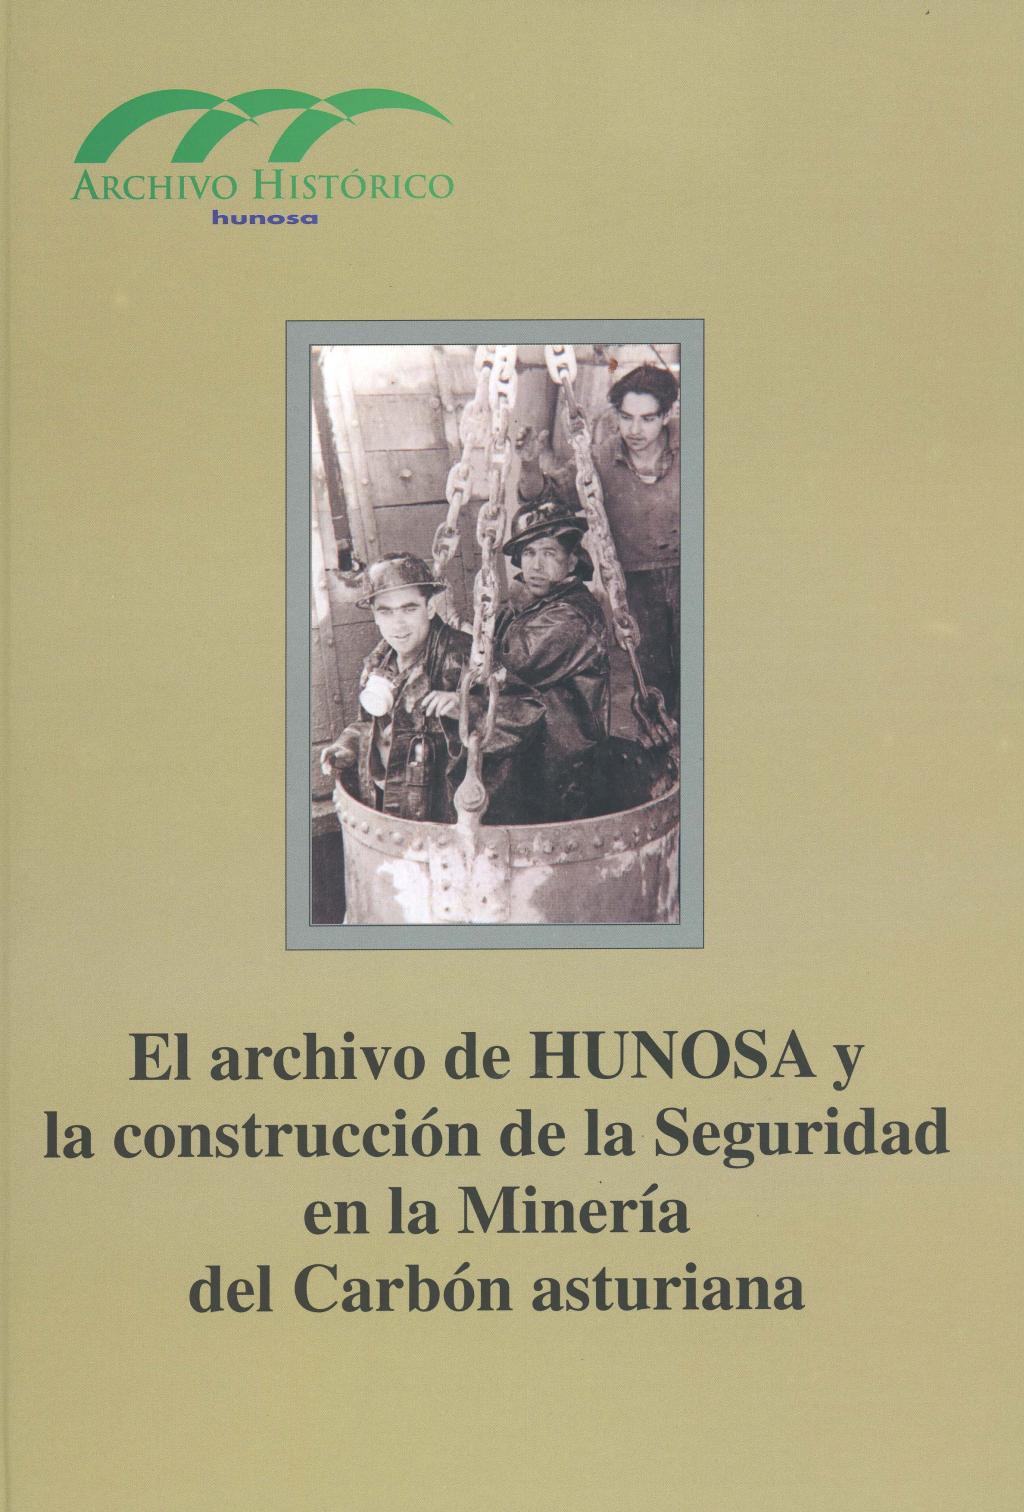 Libros El Archivo de HUNOSA construcción de la Seguridad